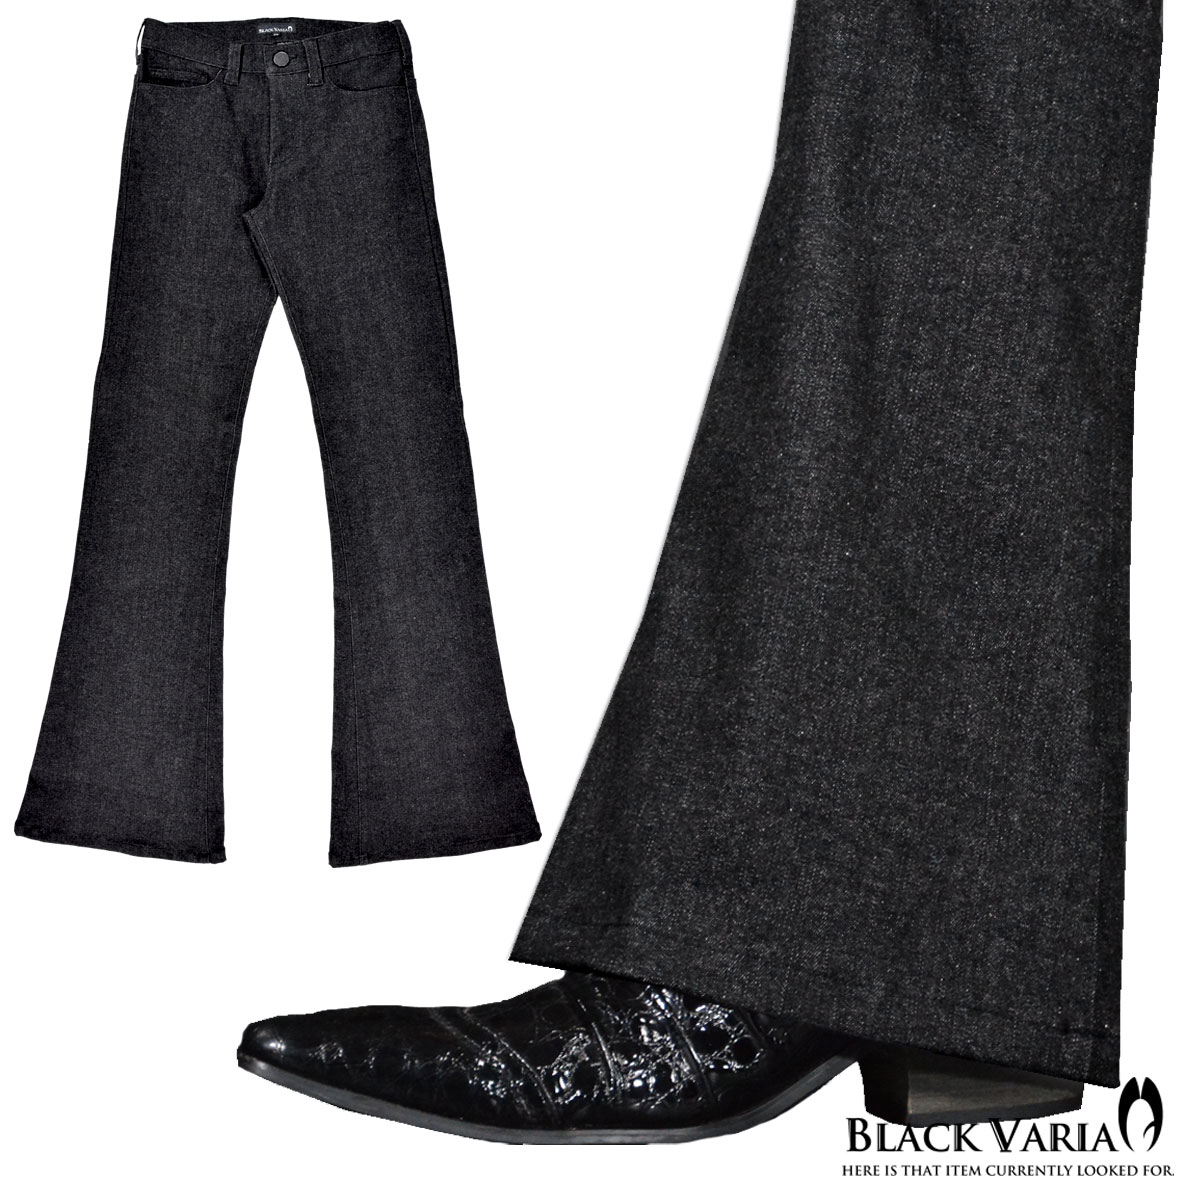 BLACK VARIA無地 日本製 裾 広い ジーンズ パンツ プレゼント 在庫あり ベルボトム ブーツカット デニム ボトムス 162252 mens メンズ ブラック黒 ストレッチ フレア ジーパン 安い 激安 プチプラ 高品質